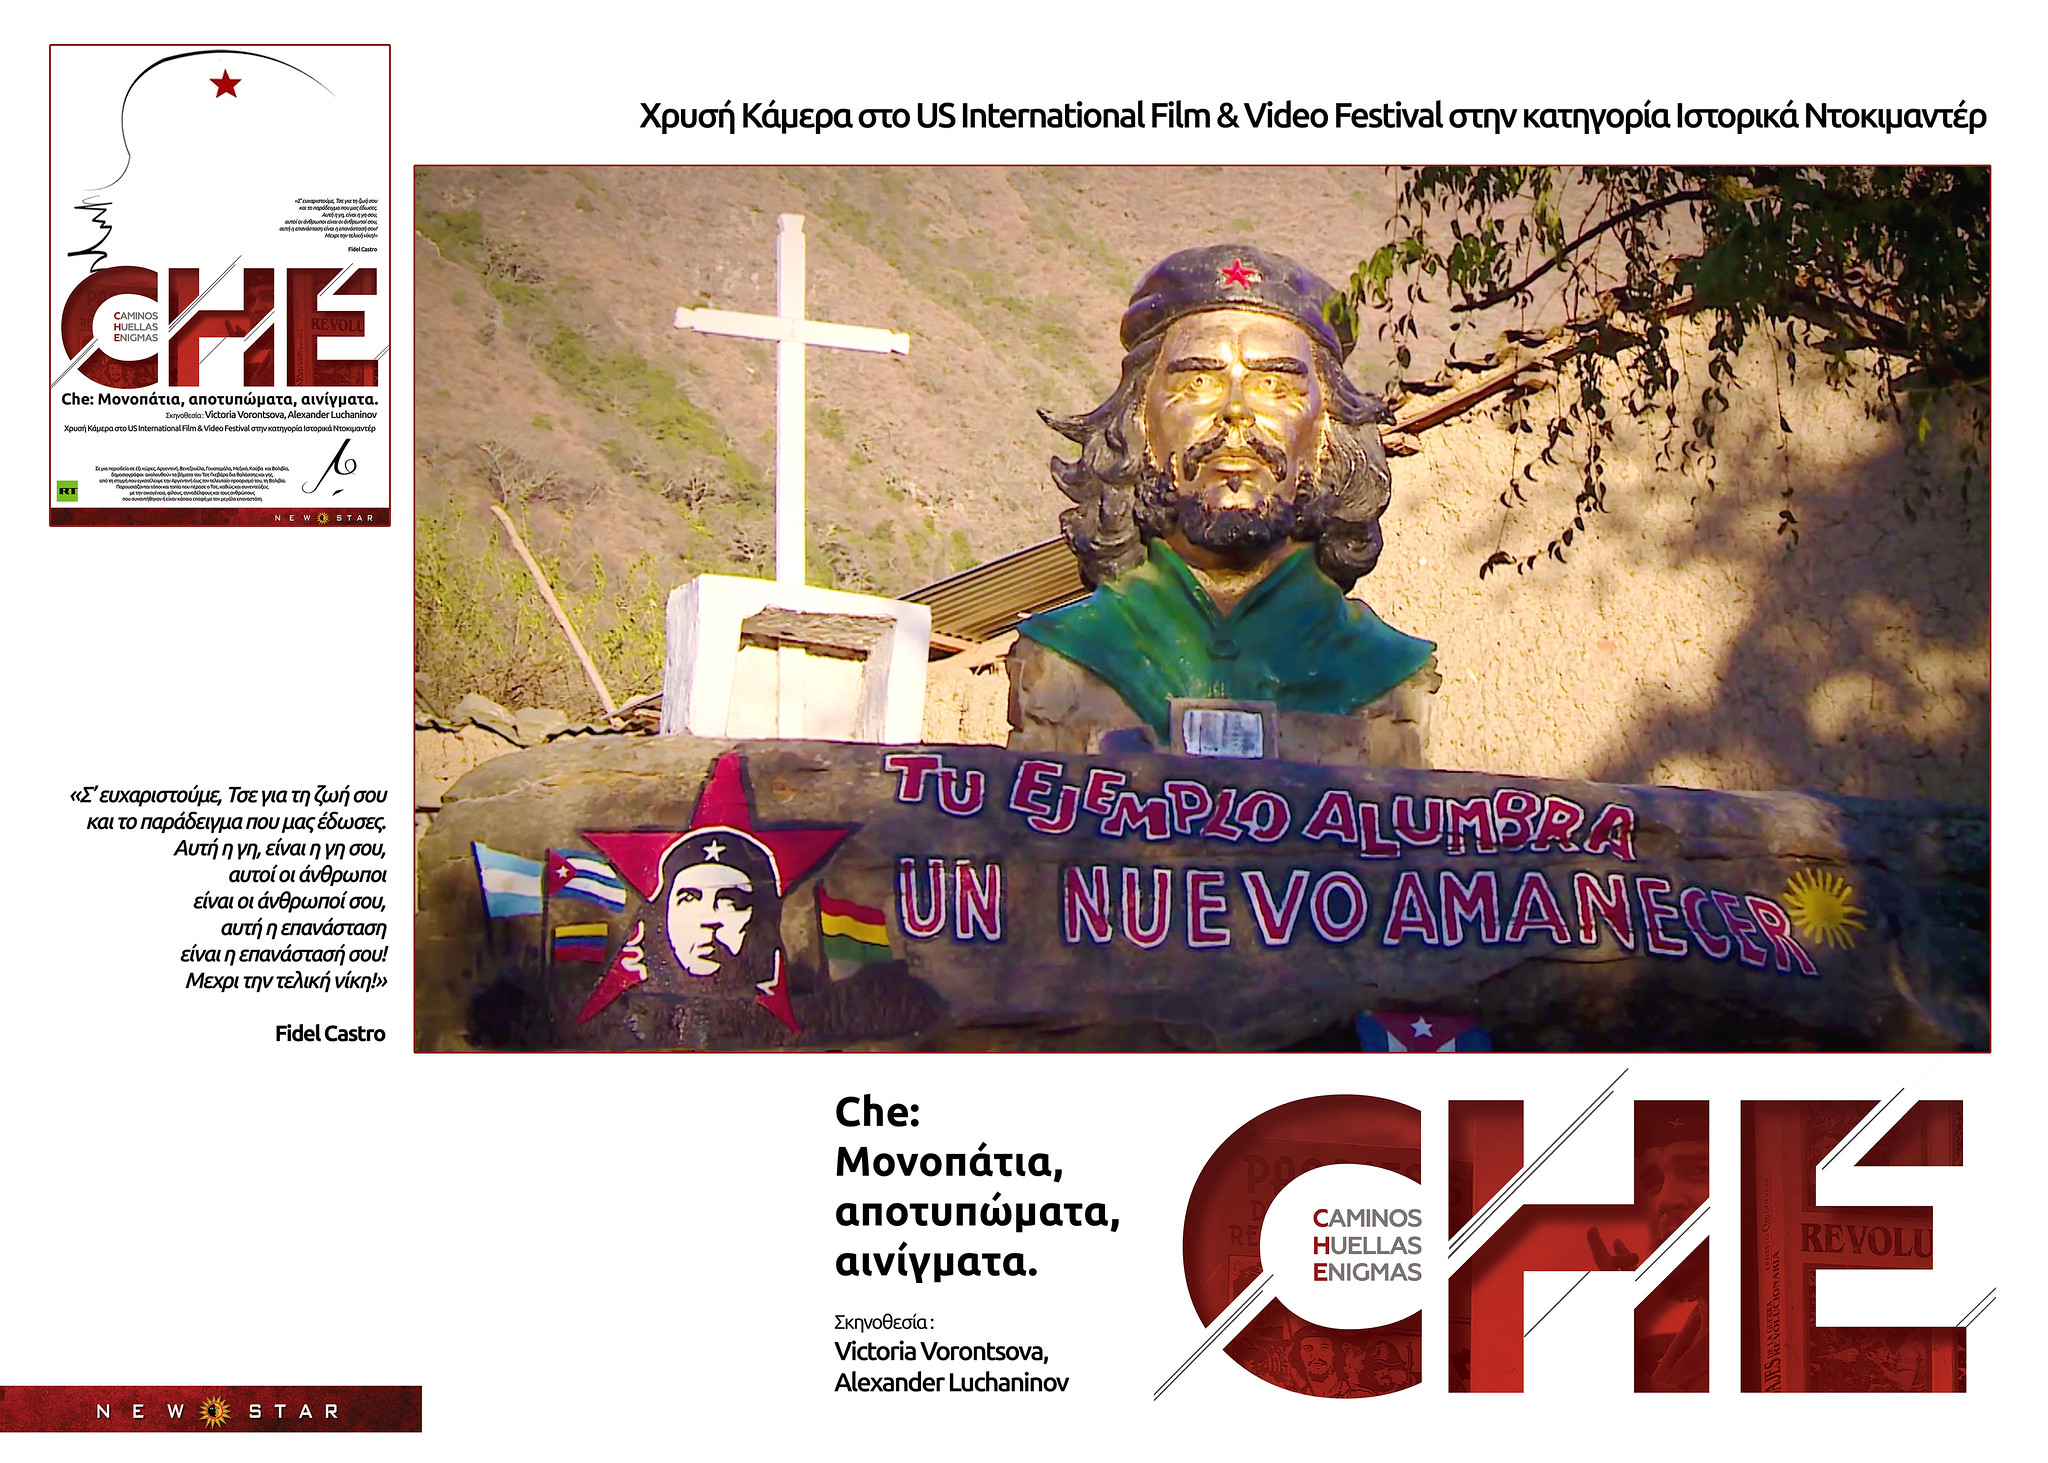 «Che: Μονοπάτια, αποτυπώματα, αινίγματα» - Το βραβευμένο ντοκιμαντέρ σε πρώτη προβολή από τη NEW STAR